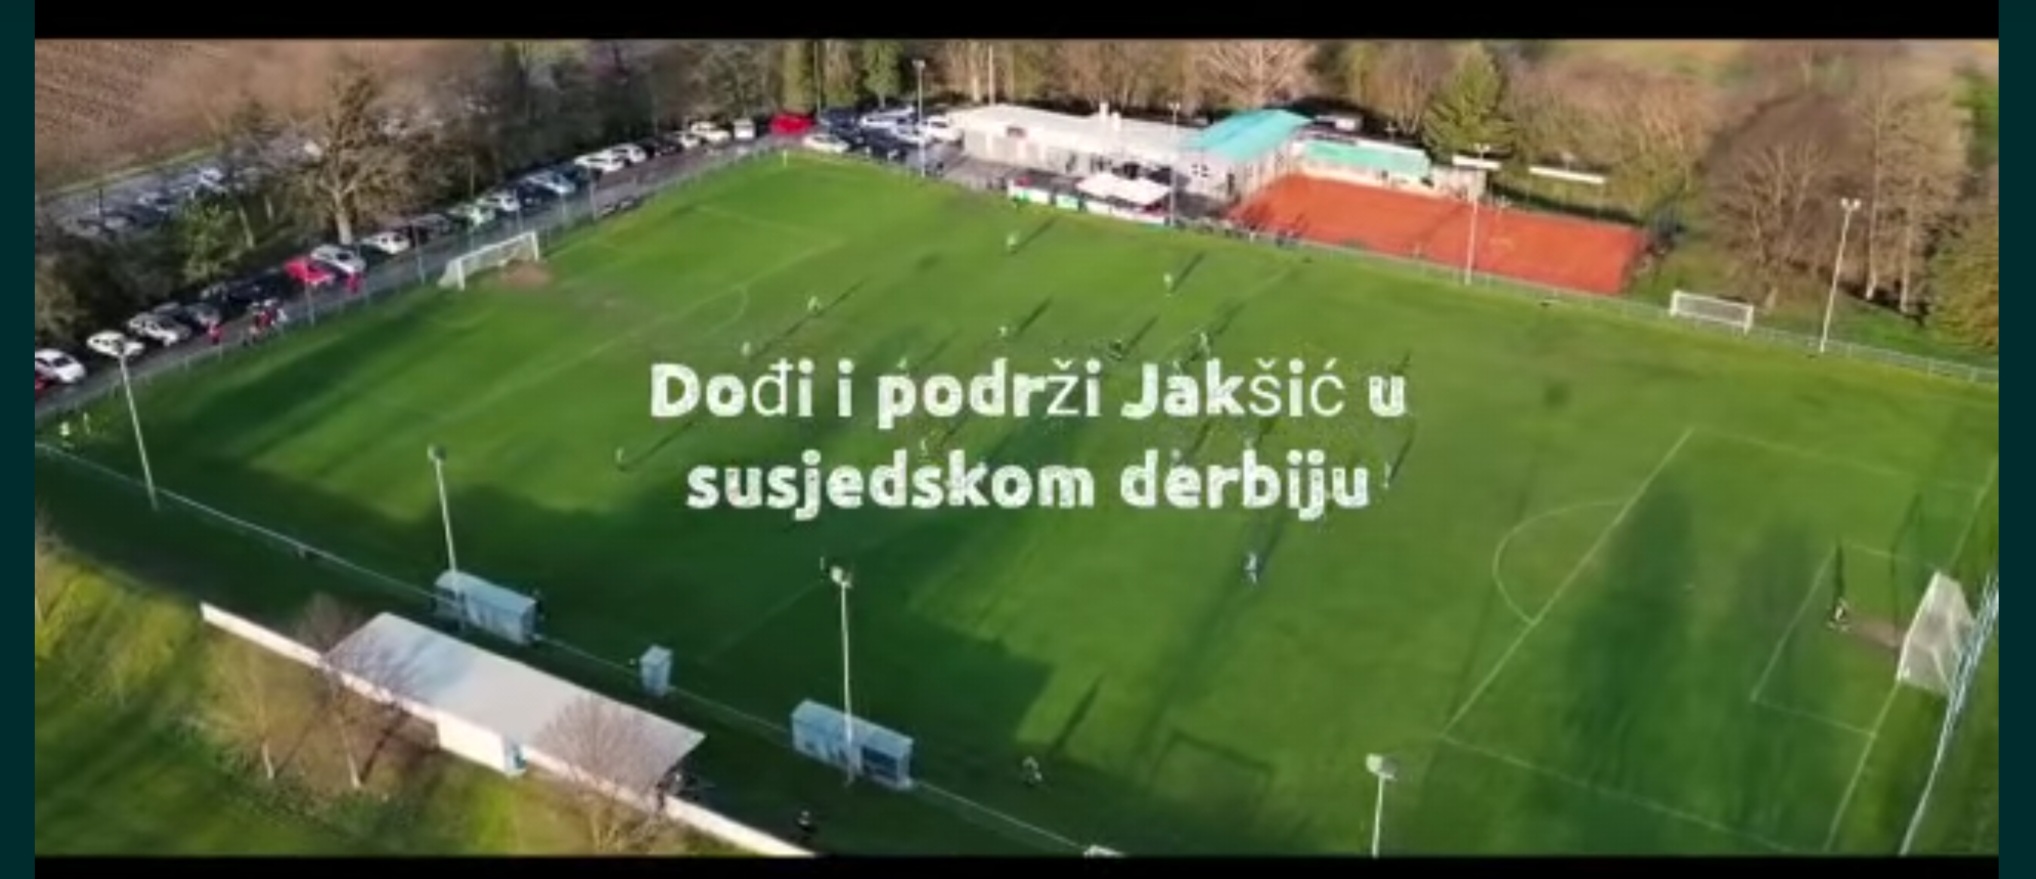 Požega.eu | Ove subote očekuje se zanimljiva i teška nogometna utakmica između ekipa Jskšić i Vidovci